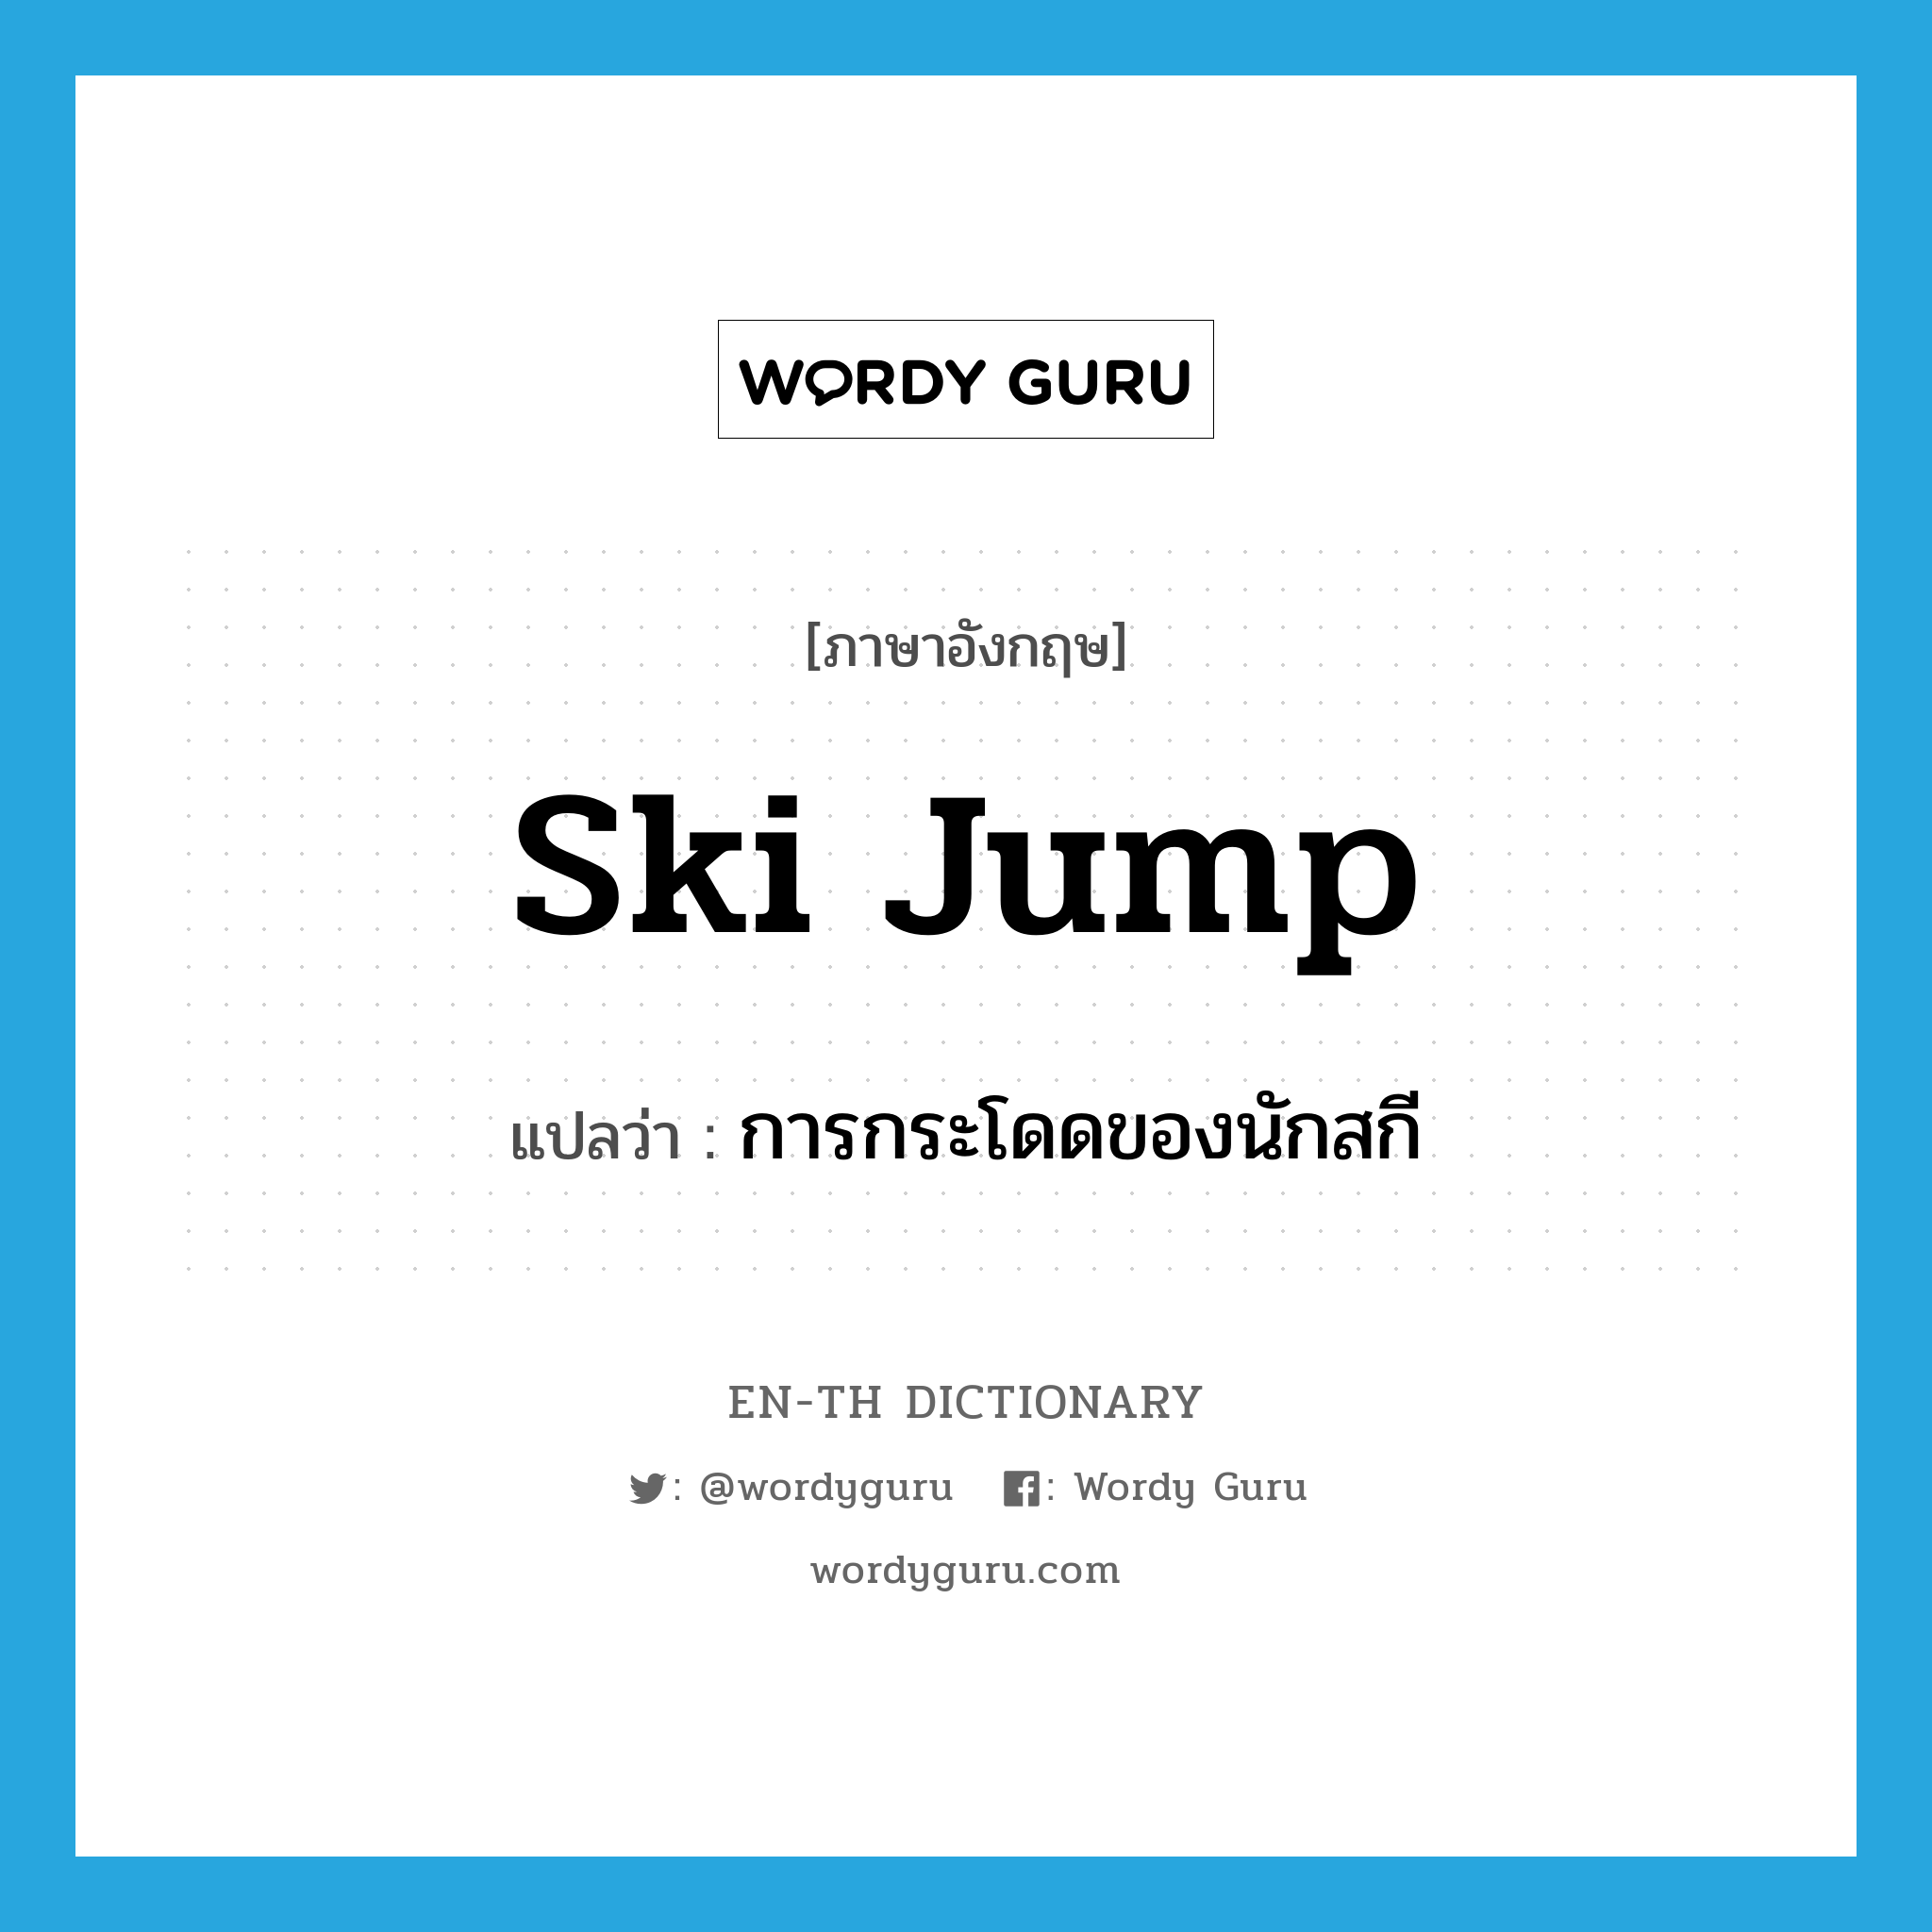 การกระโดดของนักสกี ภาษาอังกฤษ?, คำศัพท์ภาษาอังกฤษ การกระโดดของนักสกี แปลว่า ski jump ประเภท N หมวด N